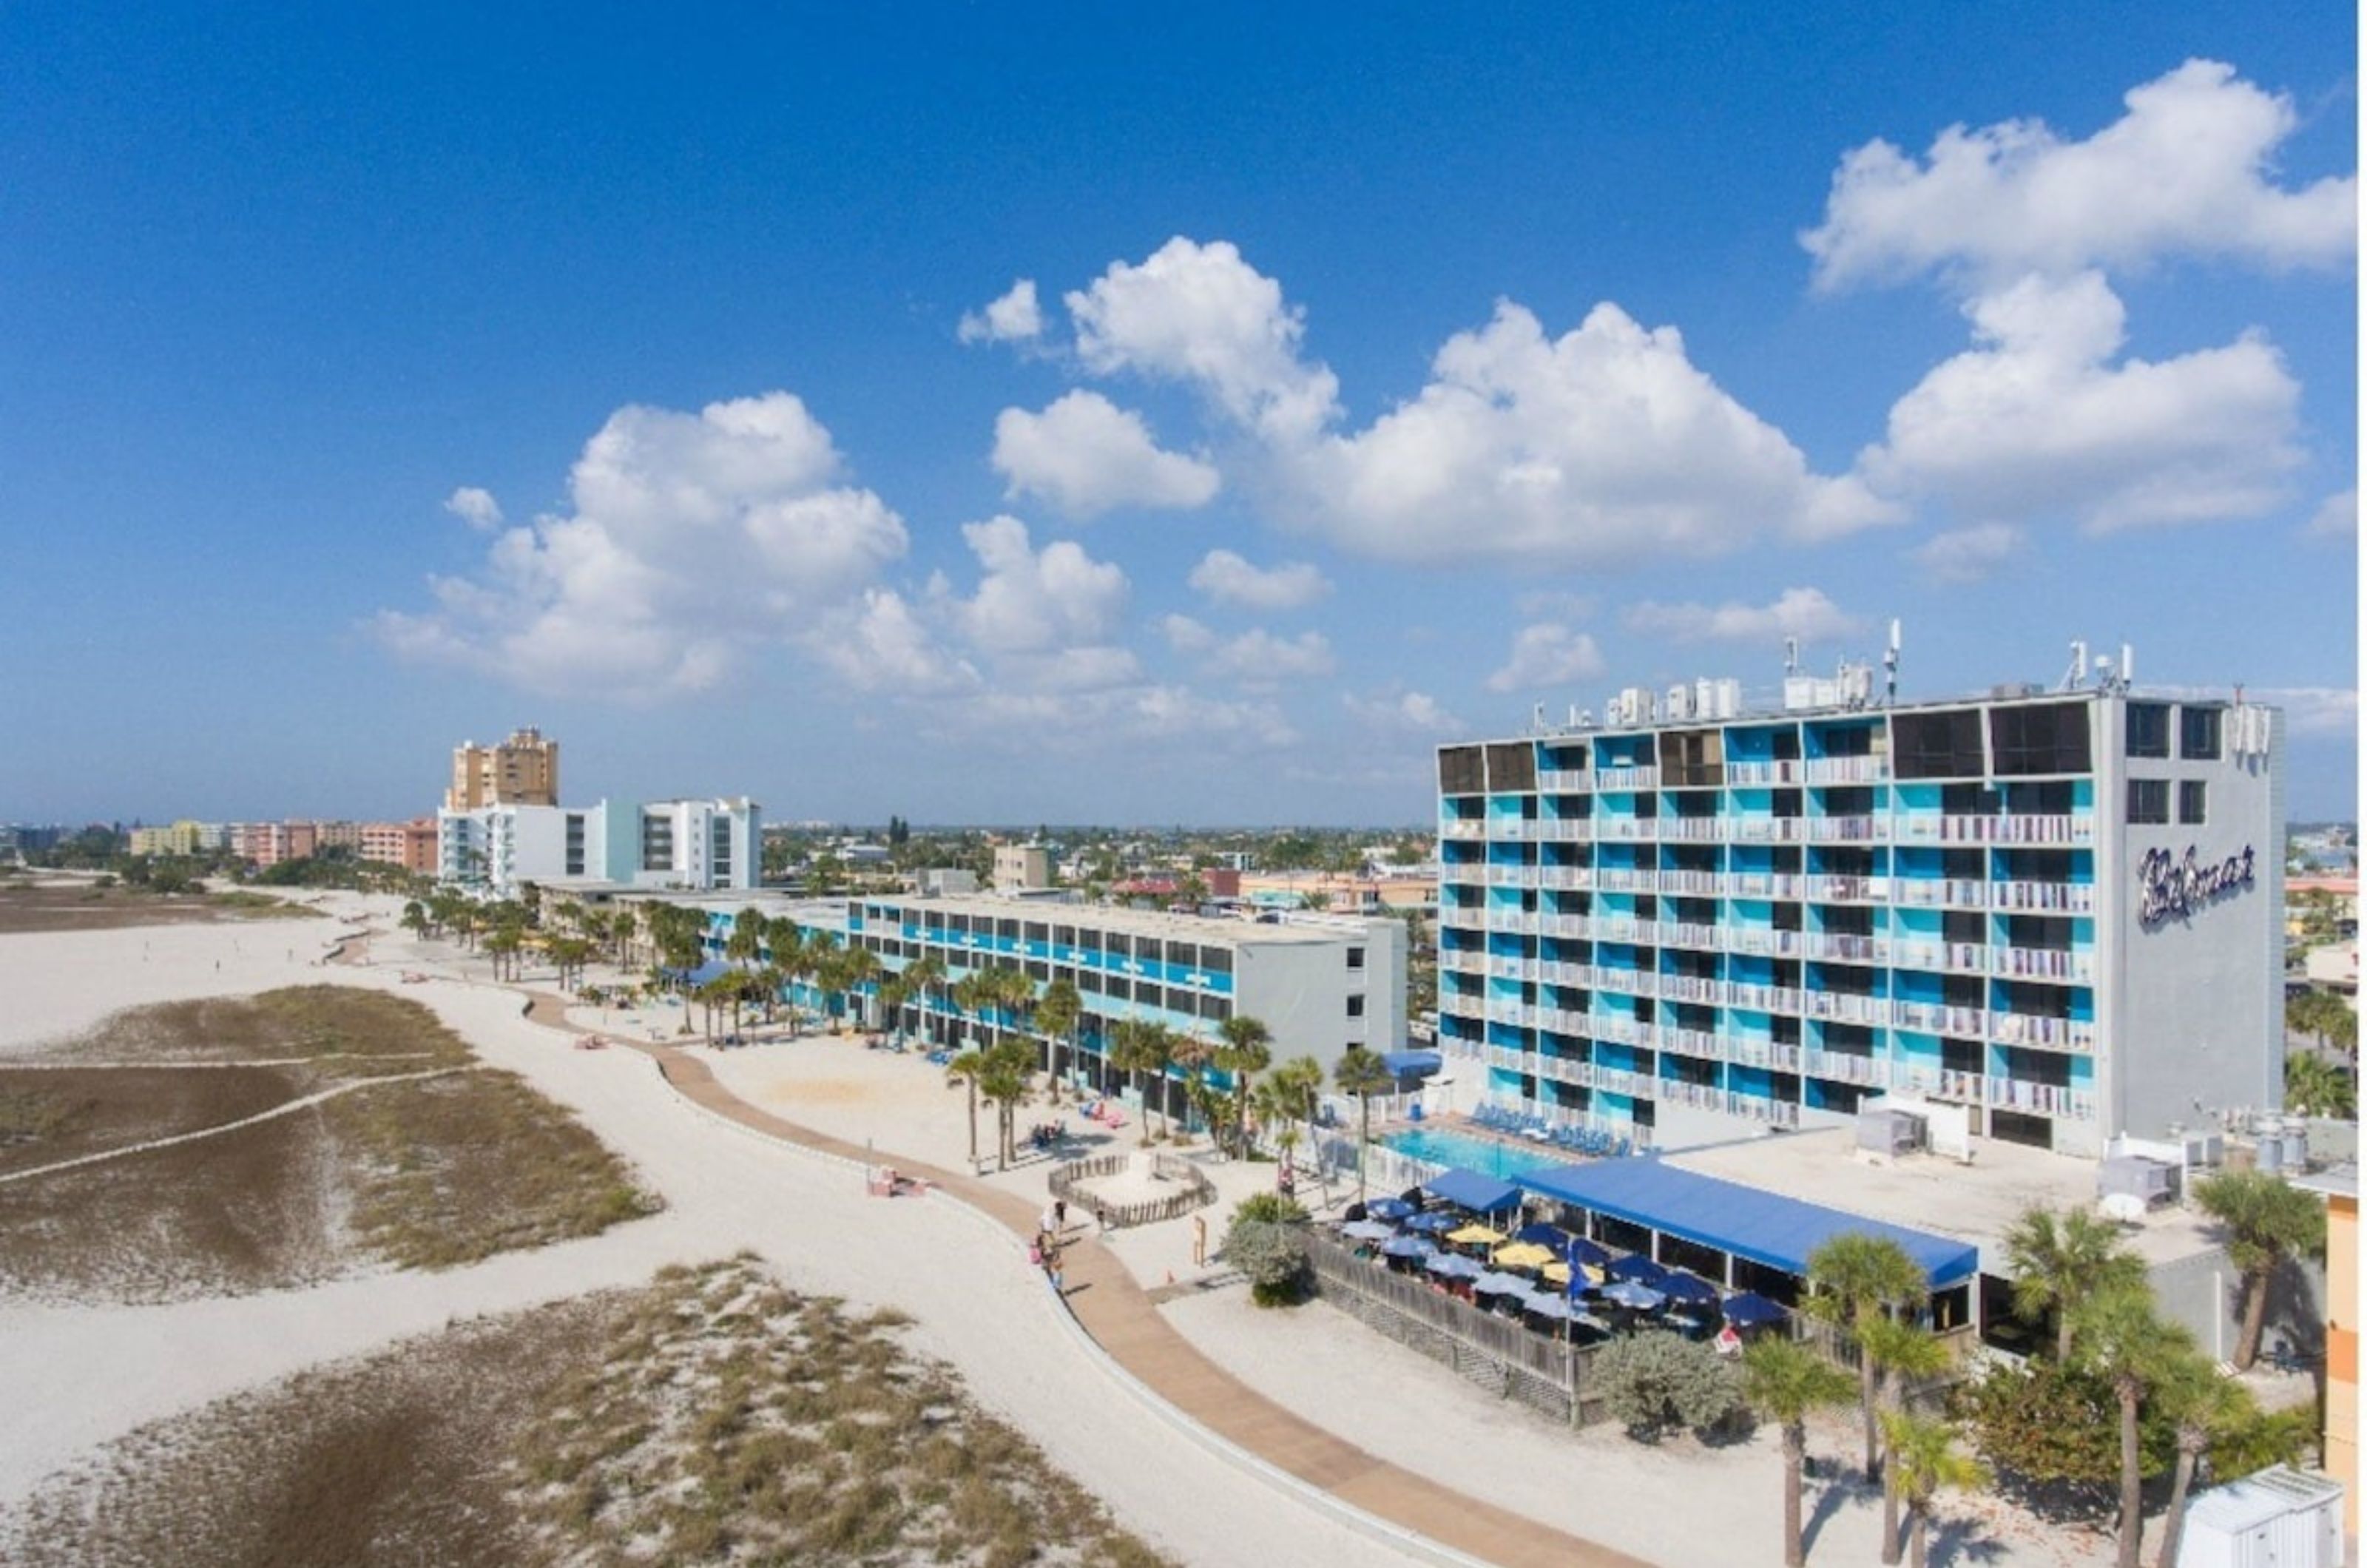 Bilmar Beach Resort in St. Pete Beach Florida 